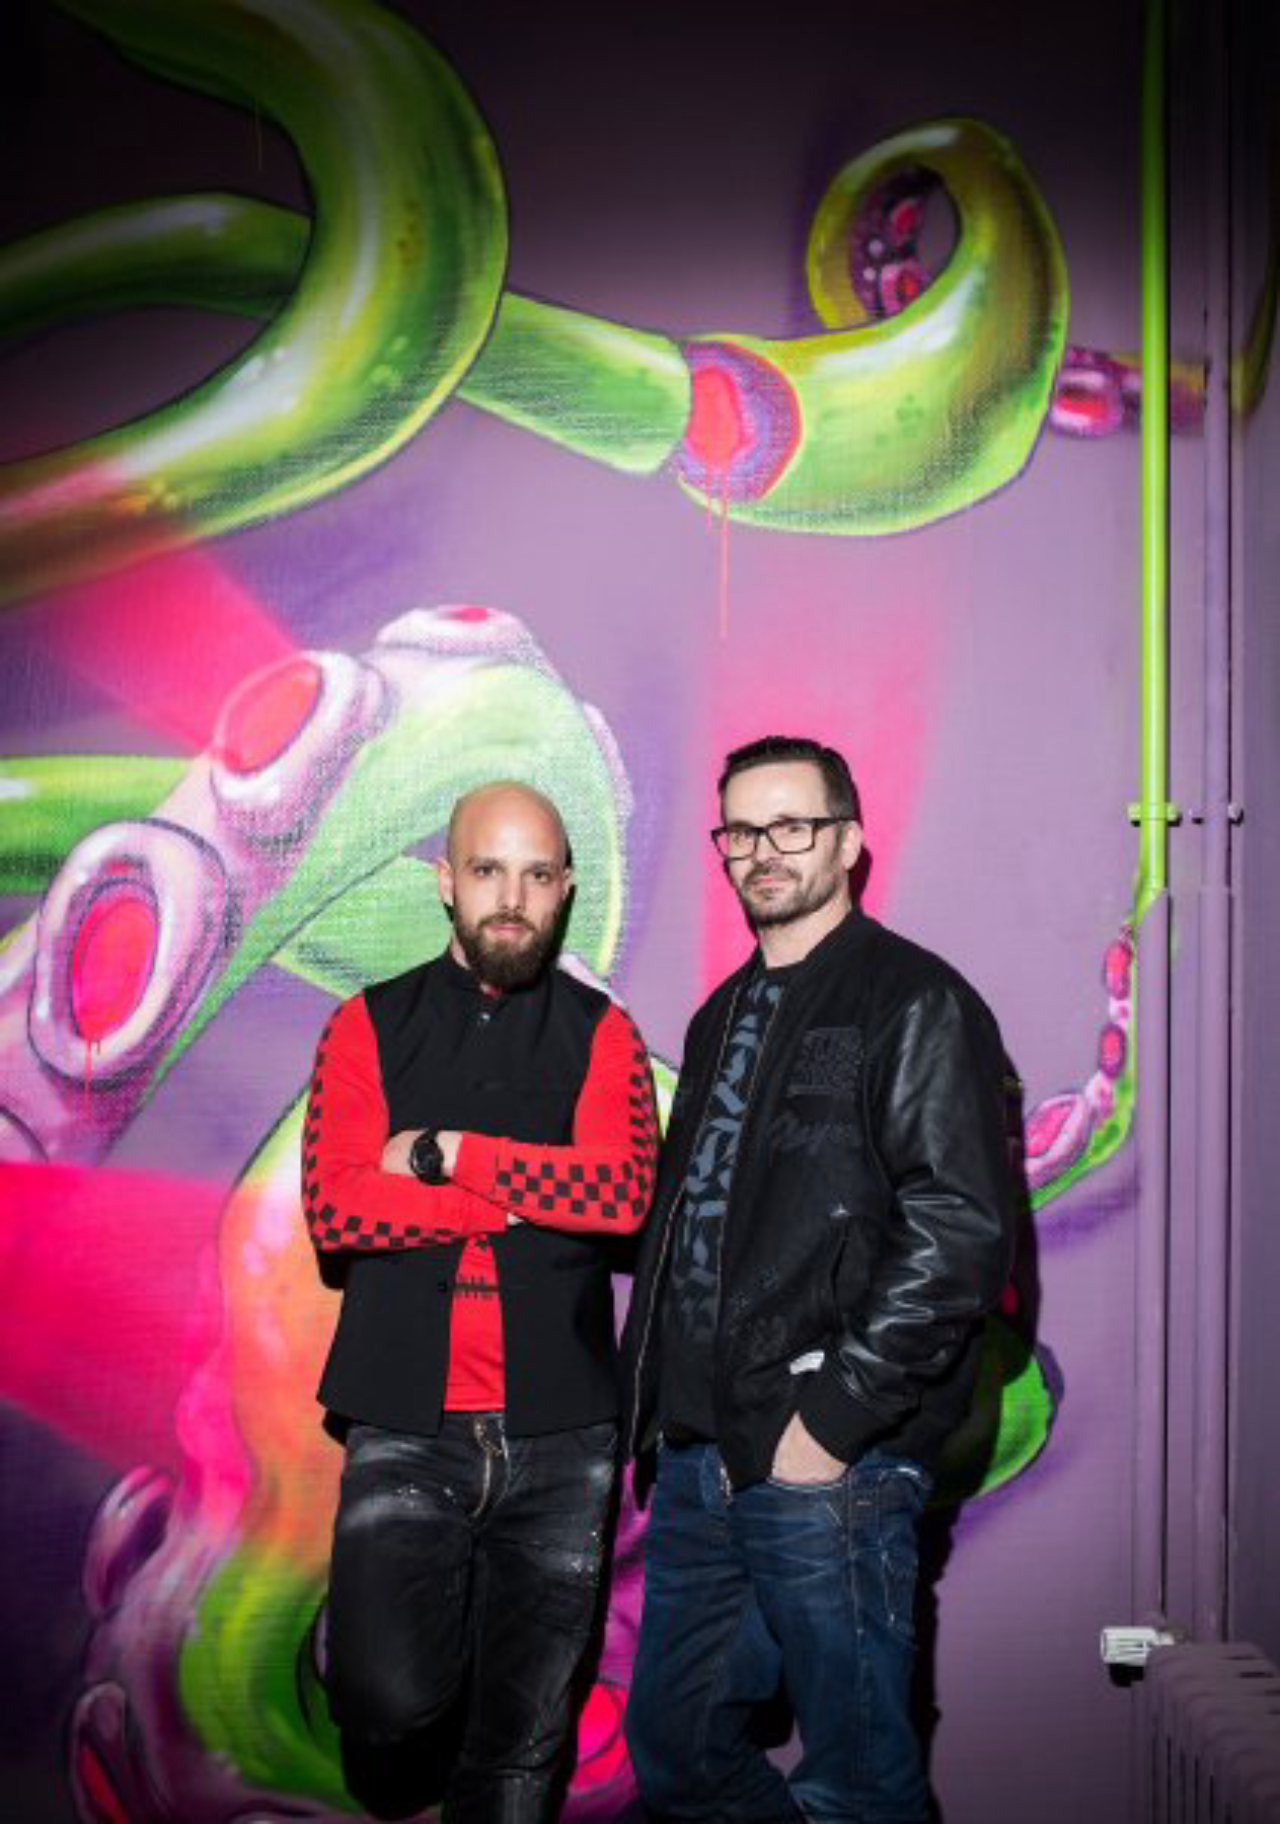 Kimo von Rekowski und Joern Reiners von den Dixons (aka Xi-Design) gehÃ¶ren zum Organisationsteam der temporÃ¤ren Streetart-Ausstellung "The Haus", die in einem zum Abriss bereitem GebÃ¤ude in der NÃ¼rnberger StraÃe gezeigt wird. Berlin, MÃ¤rz 2017